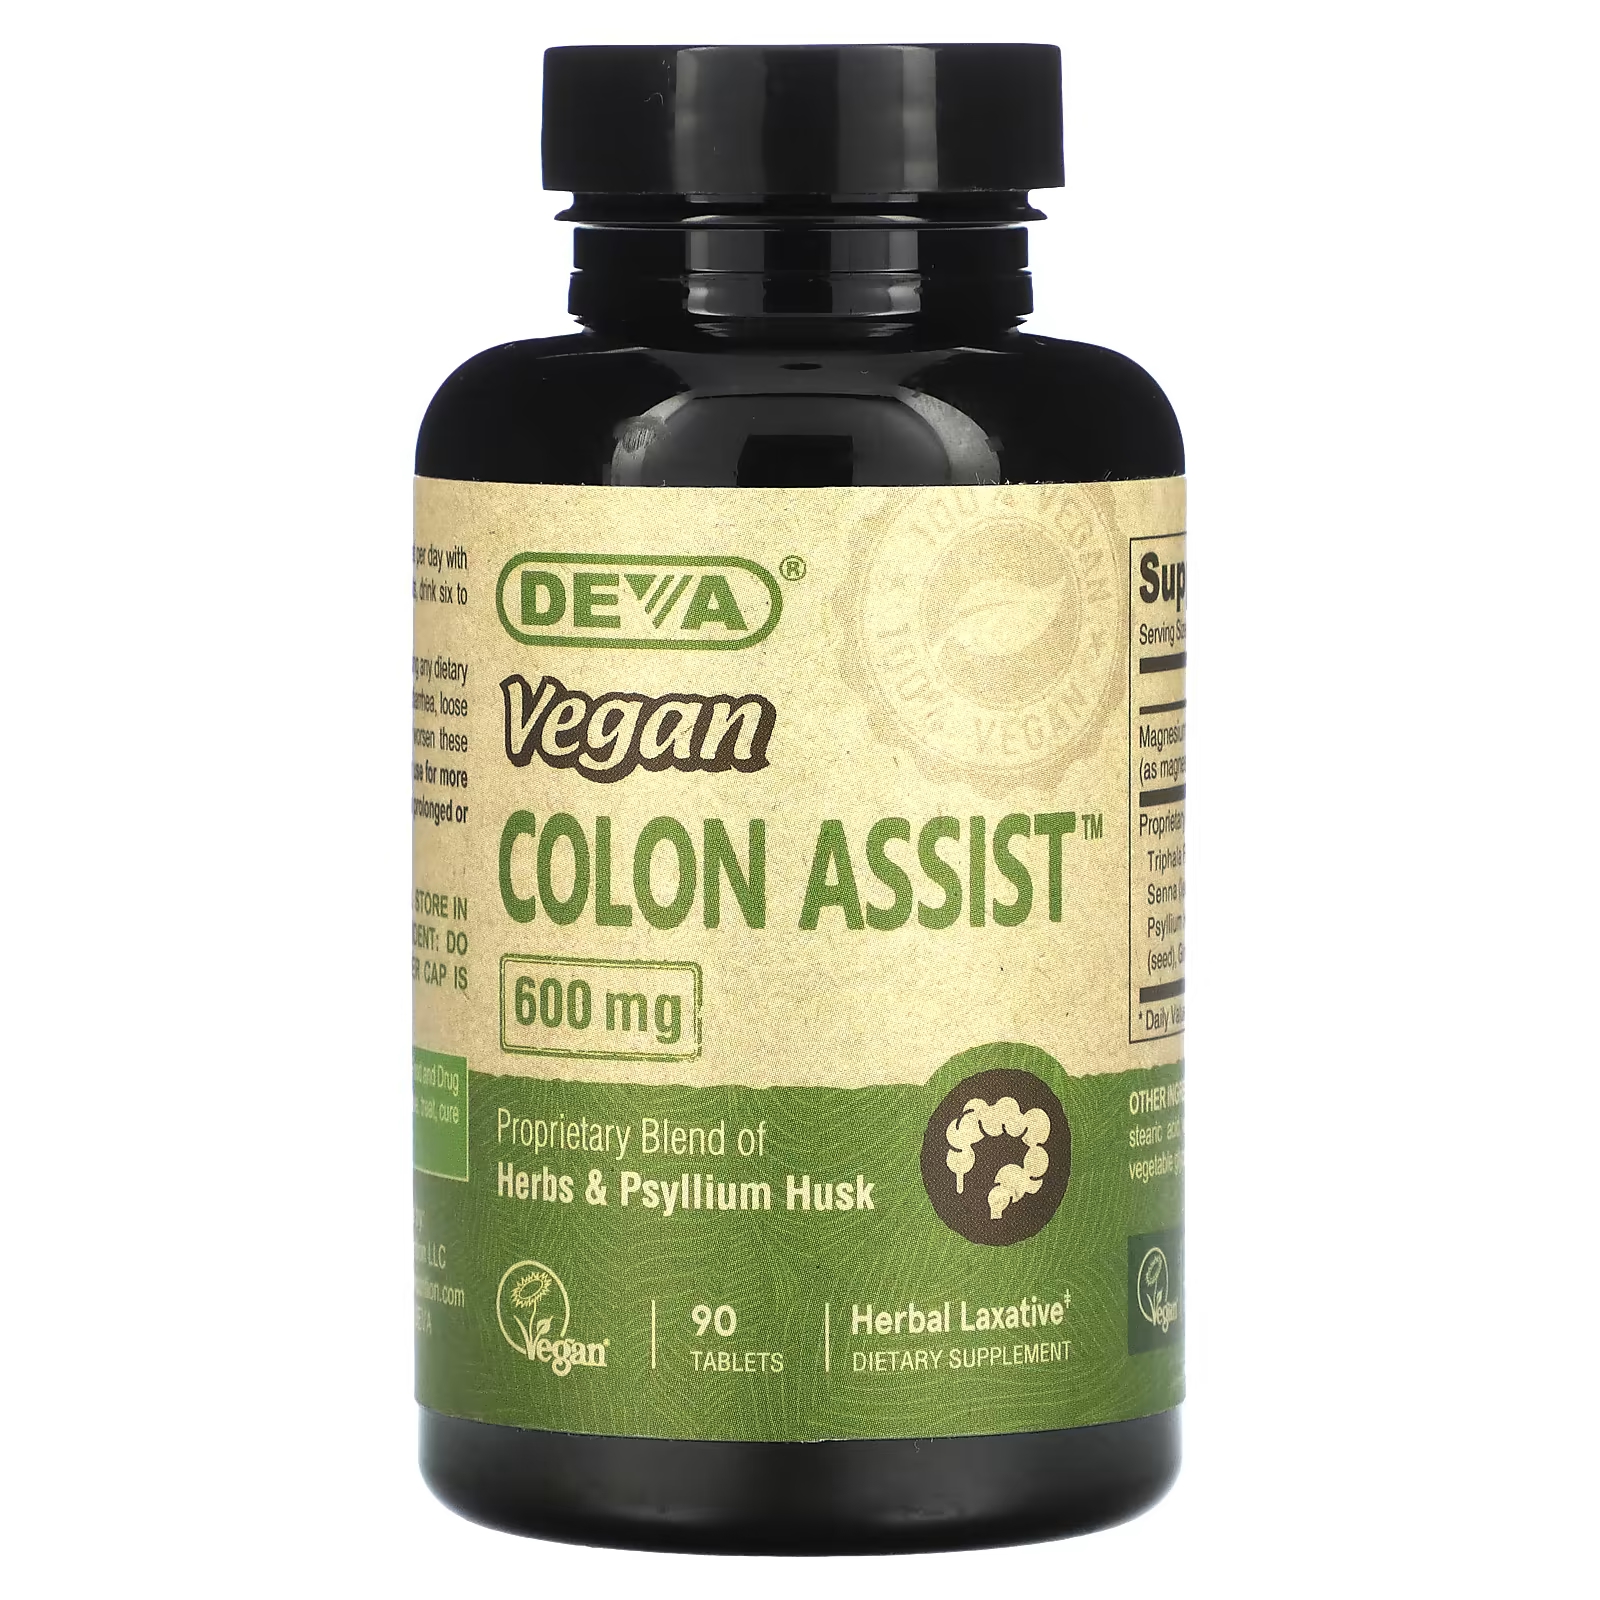 Пищевая добавка Deva Vegan Colon Assist 600 мг, 90 таблеток deva vegan colon assist 600 мг 90 таблеток